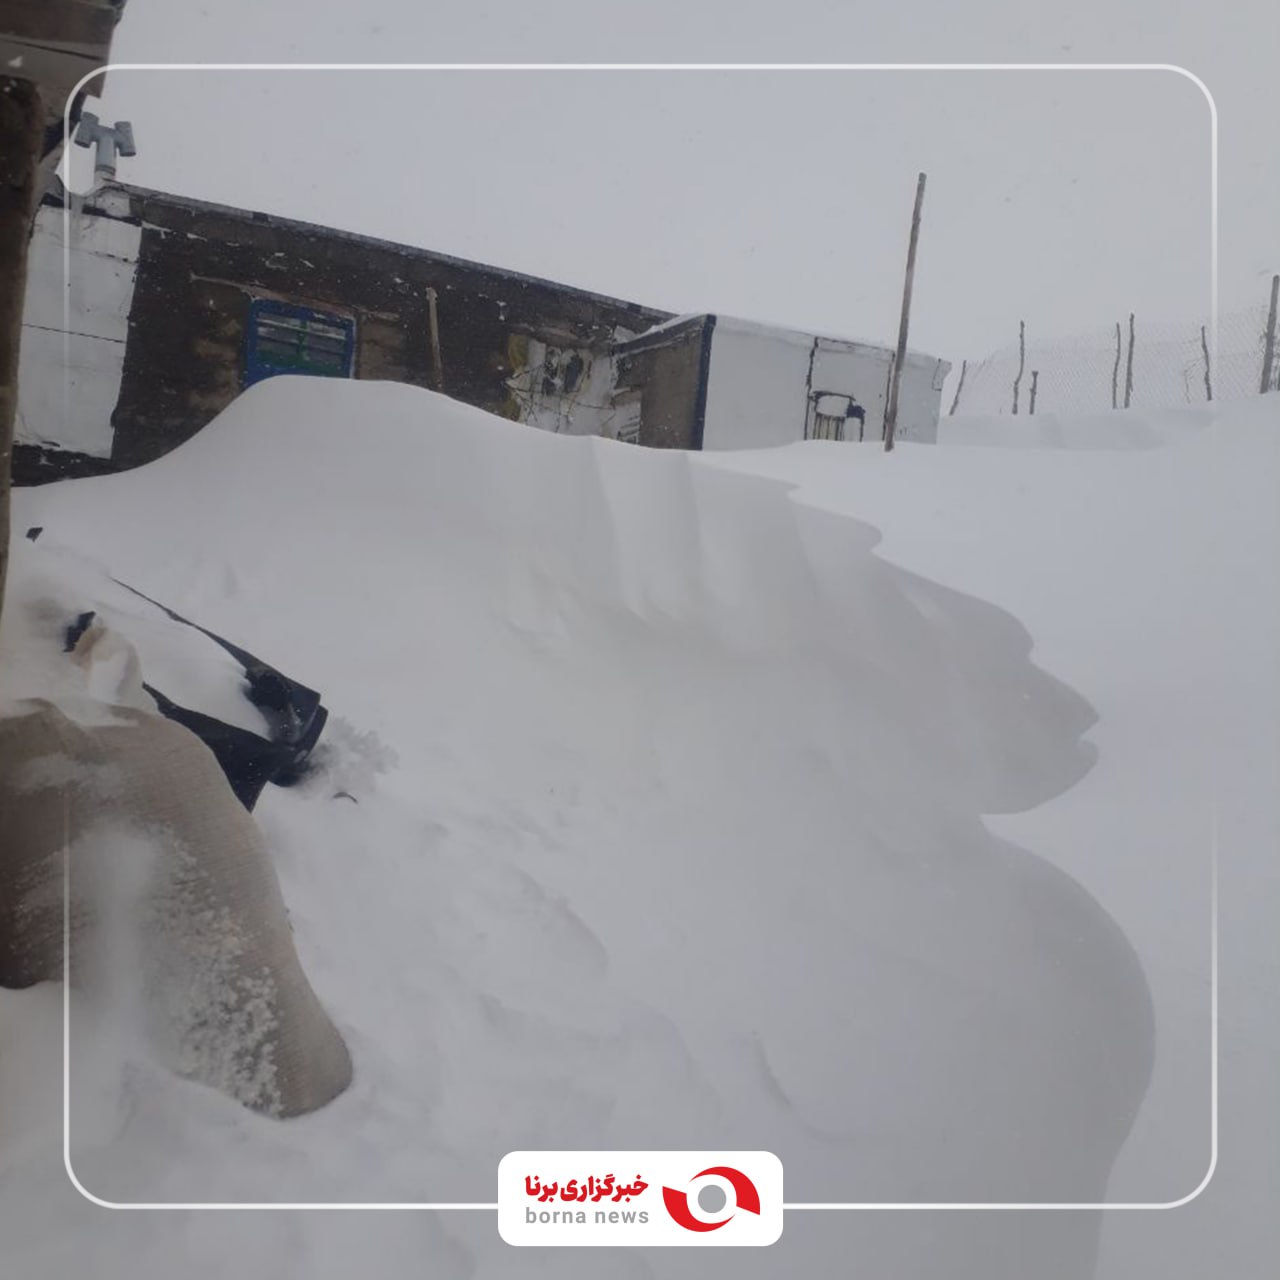 تصویر زیبای کولاک برف در ورودی یکی از خانه‌های روستایی سقز!